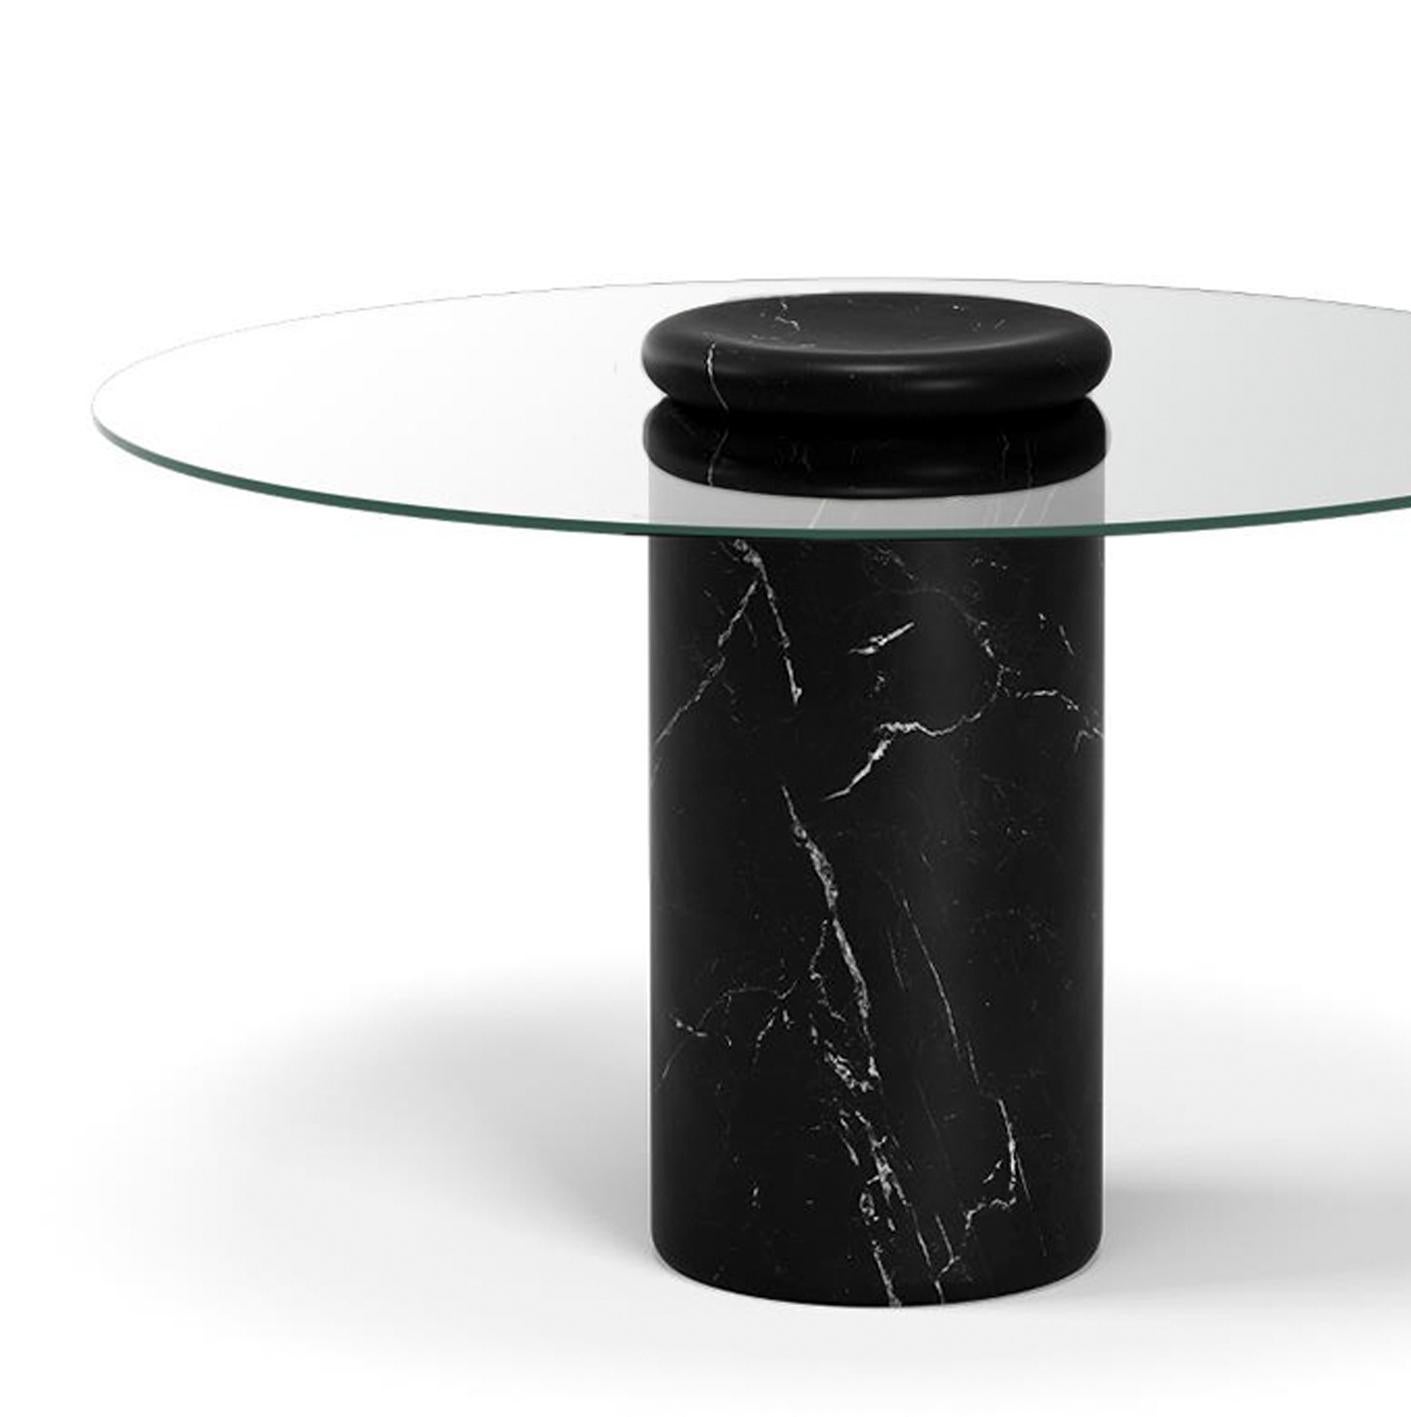 Tisch entworfen von Angelo Mangiarotti 

Castore ist ein Tisch aus Glas und Marmor des italienischen Architekten, Bildhauers und Designers Angelo Mangiarotti. Das 1975 für Sorgente dei Mobili entworfene, unverwechselbare Design wird nun von Karakter